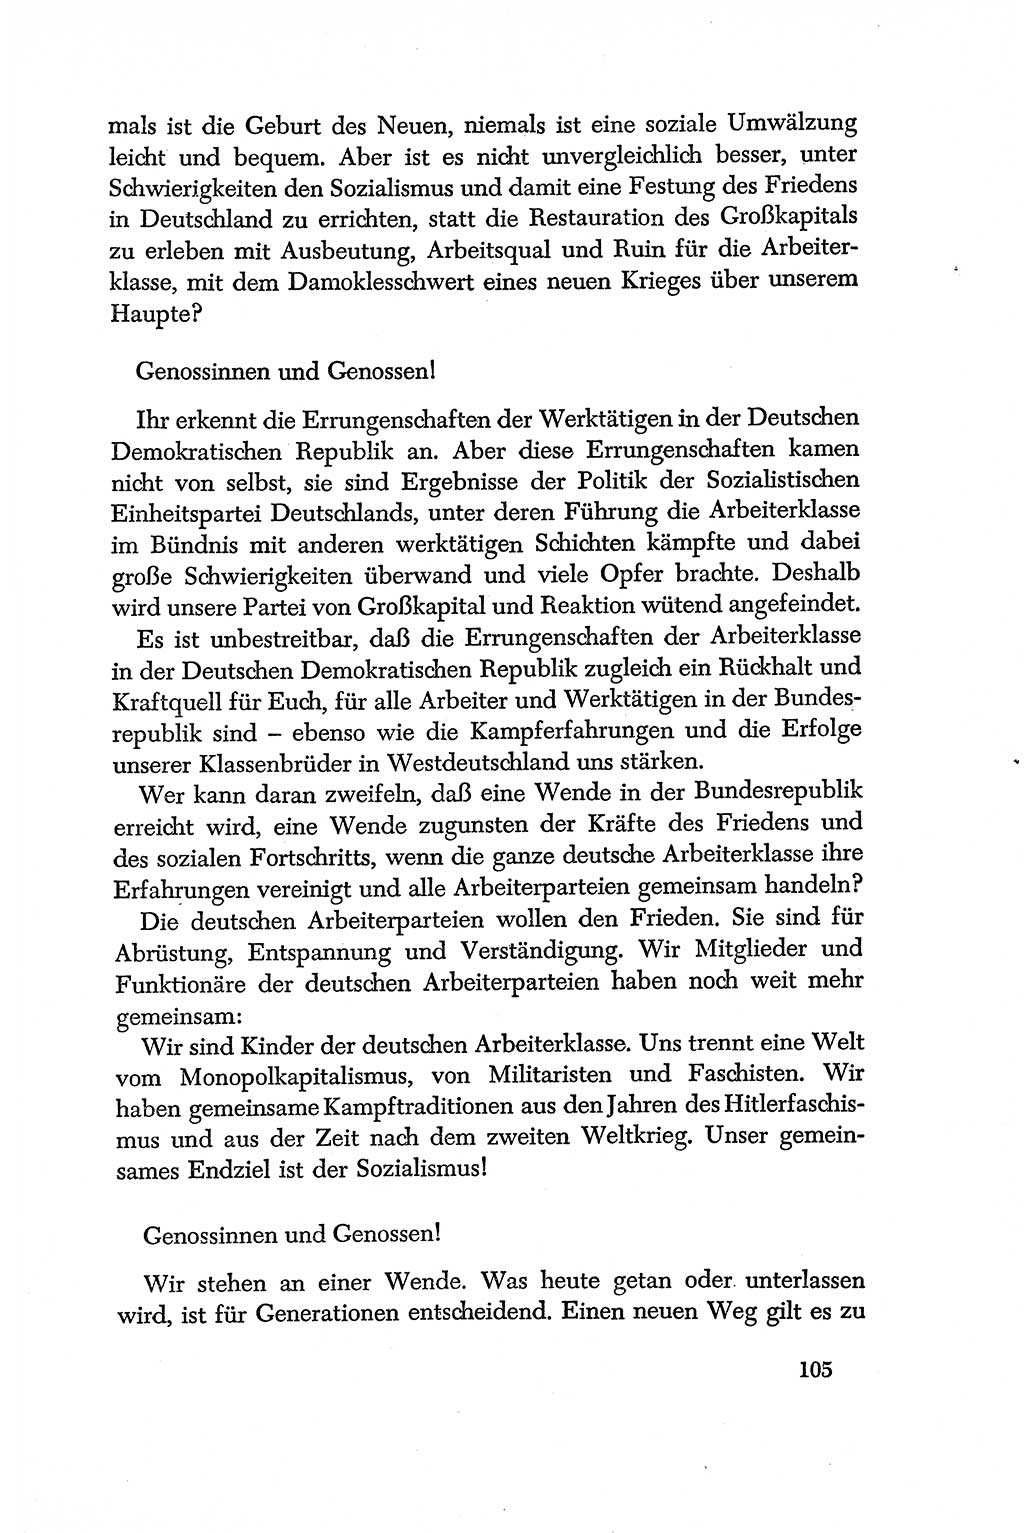 Dokumente der Sozialistischen Einheitspartei Deutschlands (SED) [Deutsche Demokratische Republik (DDR)] 1956-1957, Seite 105 (Dok. SED DDR 1956-1957, S. 105)